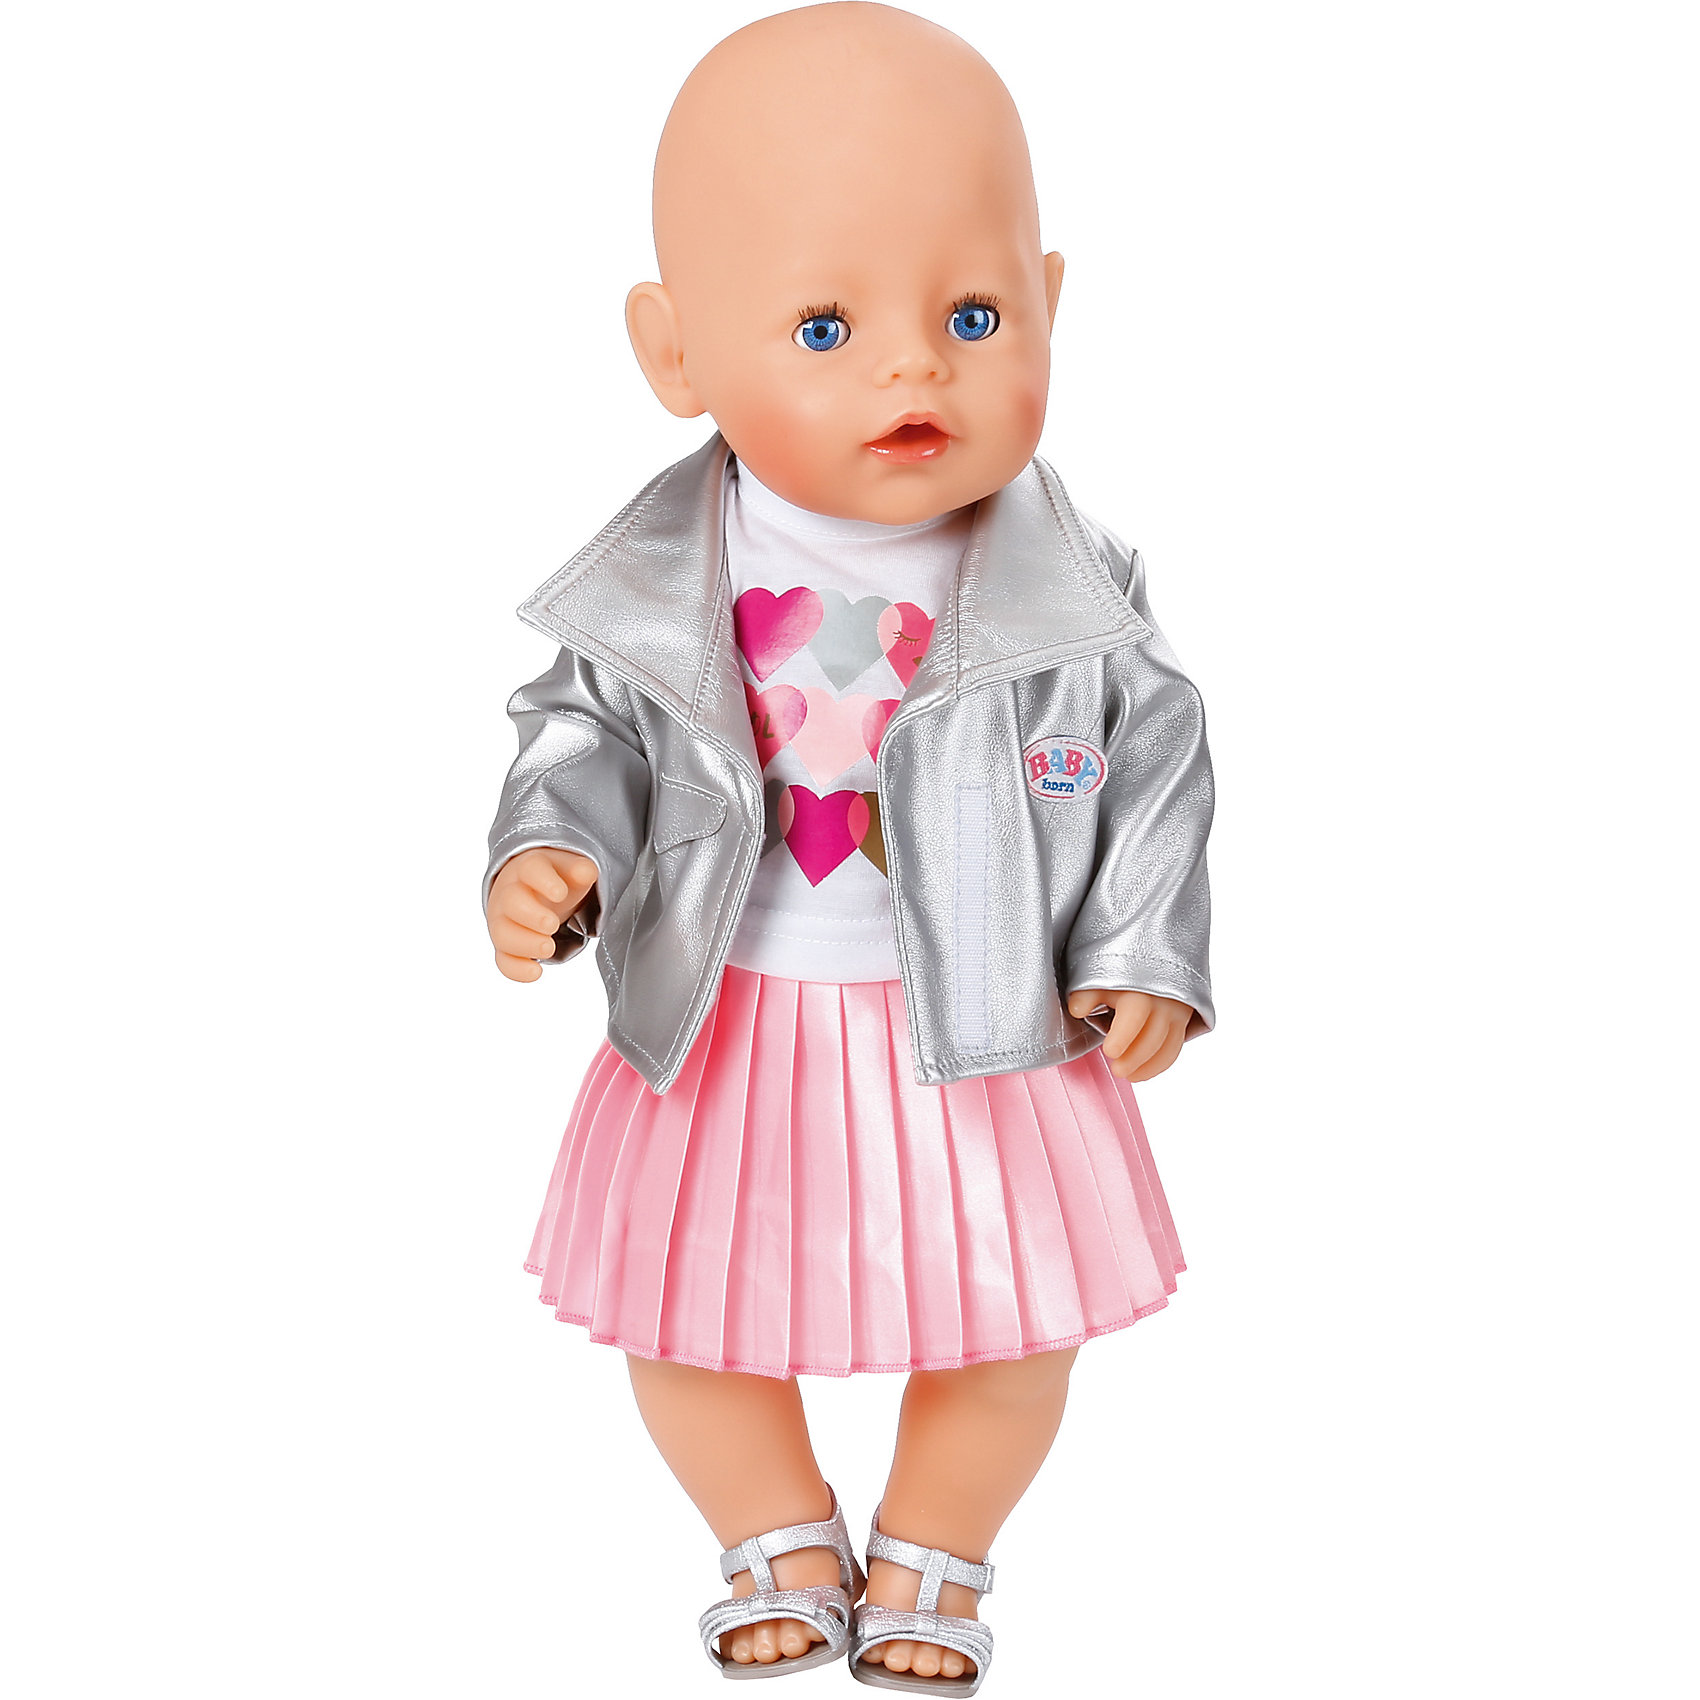 Одежда для беби борн. Одежда Zapf Creation Baby born. Zapf Creation комплект одежды для куклы Baby born 824931. Одежда для кукол Беби Борн. Одежда для кукол Zapf Creation Baby born.